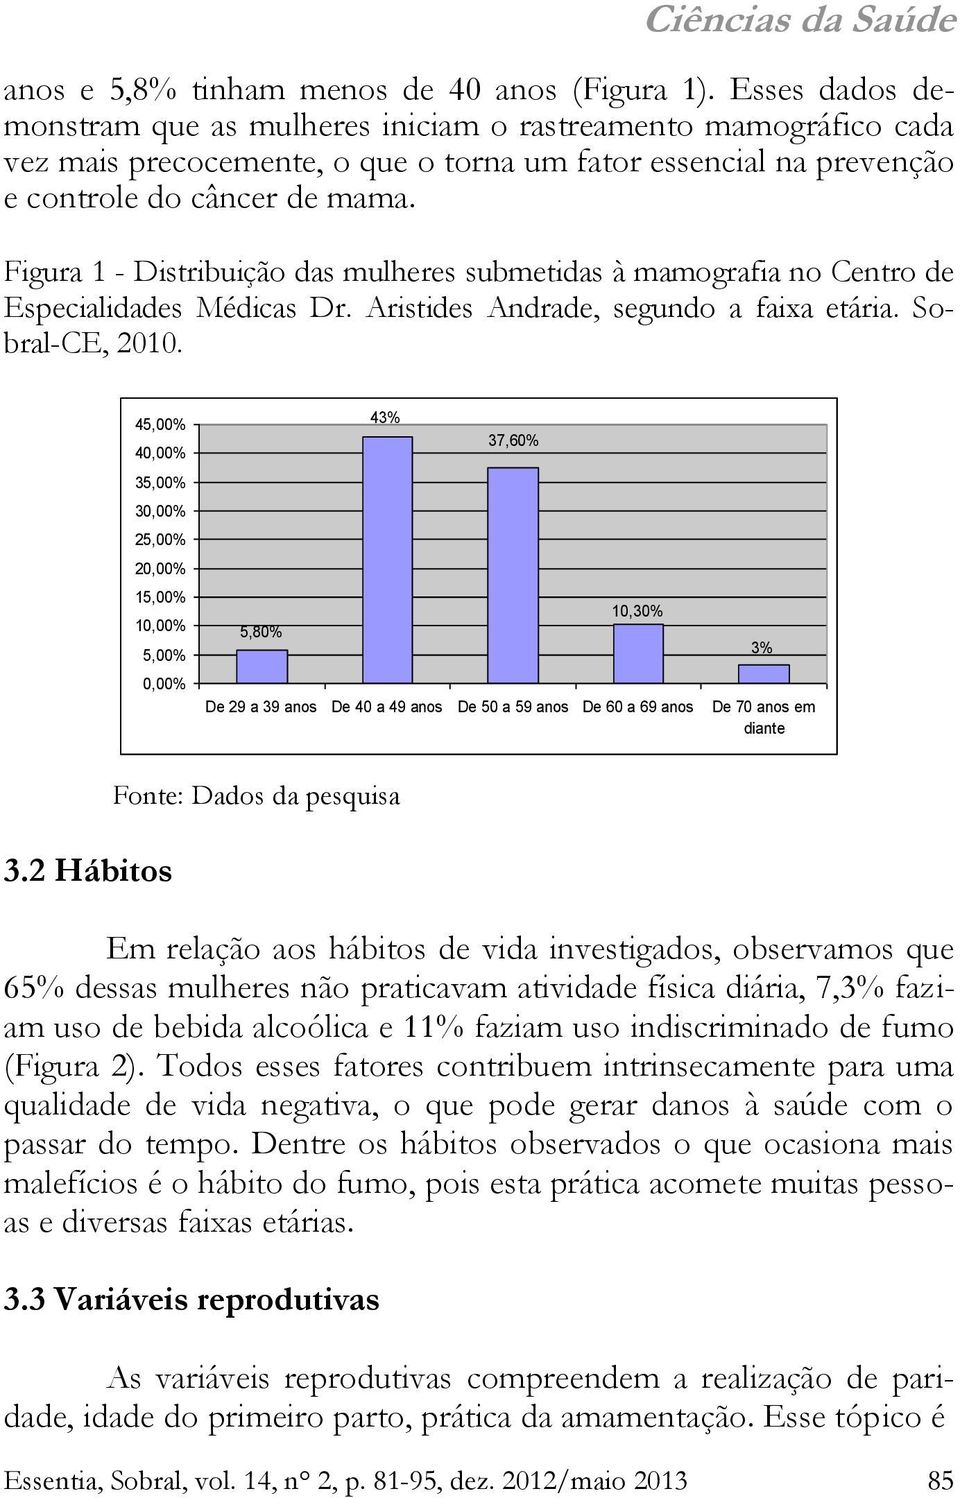 Figura 1 - Distribuição das mulheres submetidas à mamografia no Centro de Especialidades Médicas Dr. Aristides Andrade, segundo a faixa etária. Sobral-CE, 2010.